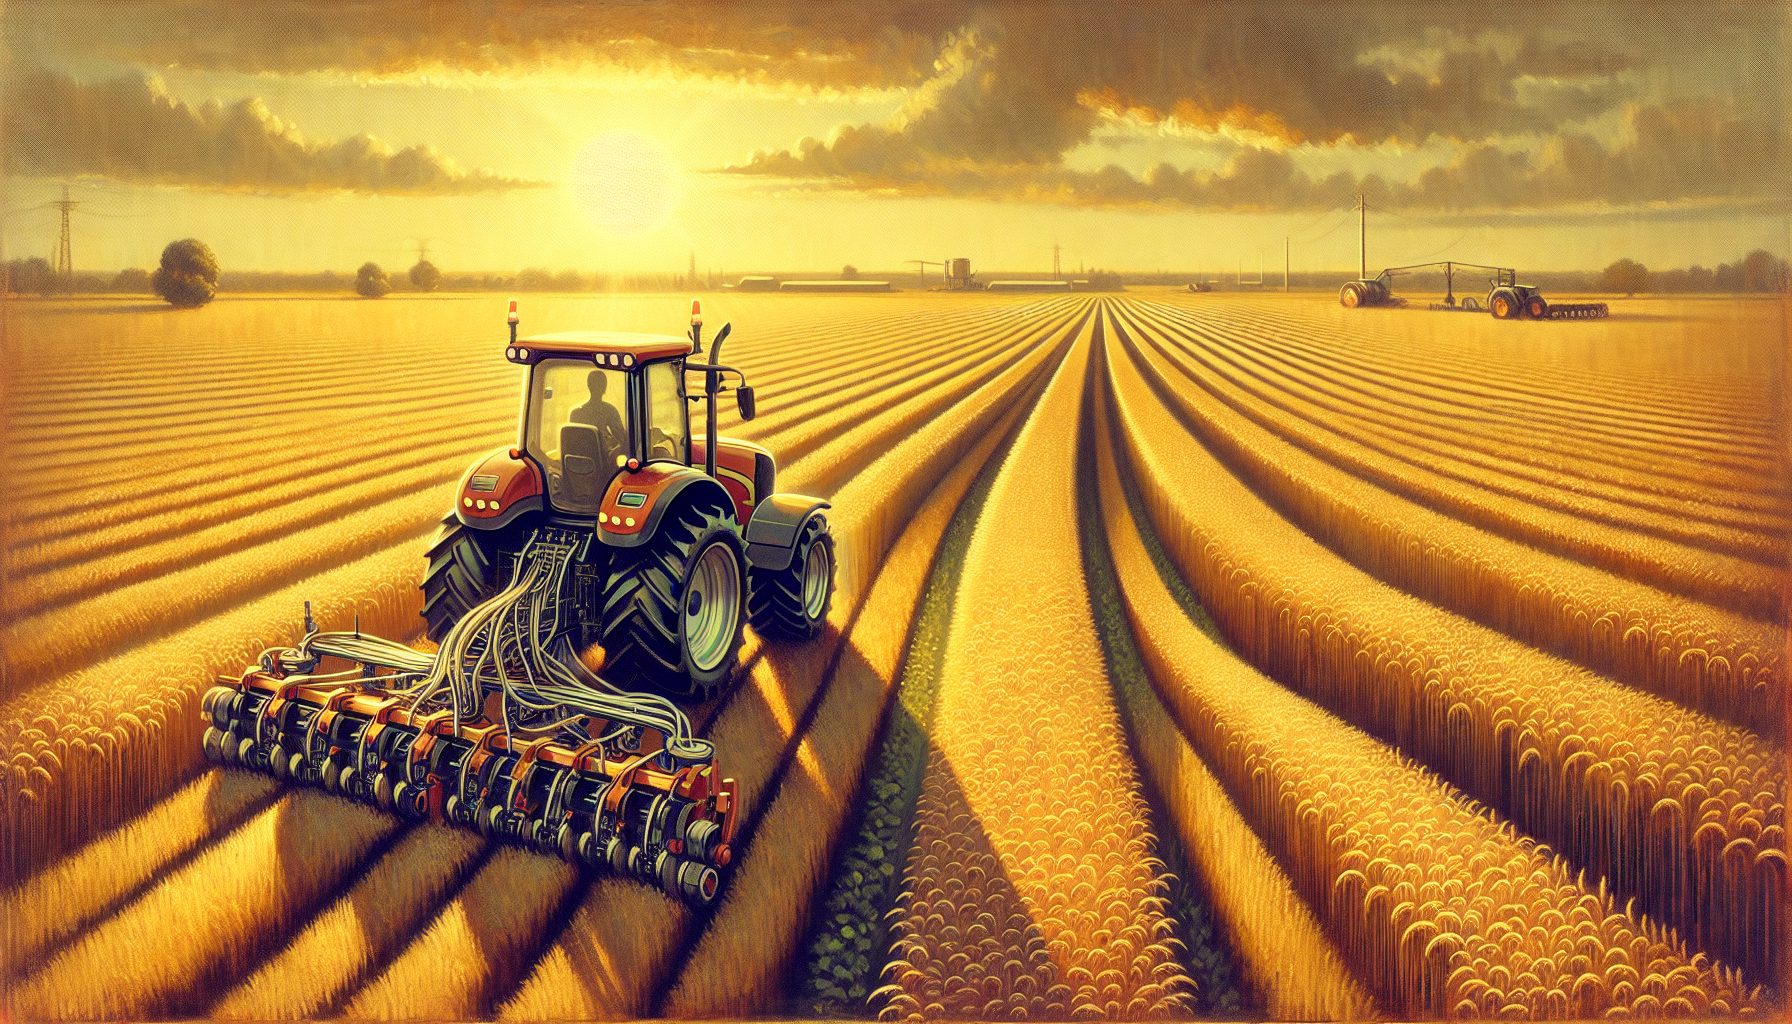 "Autonomous Farming"